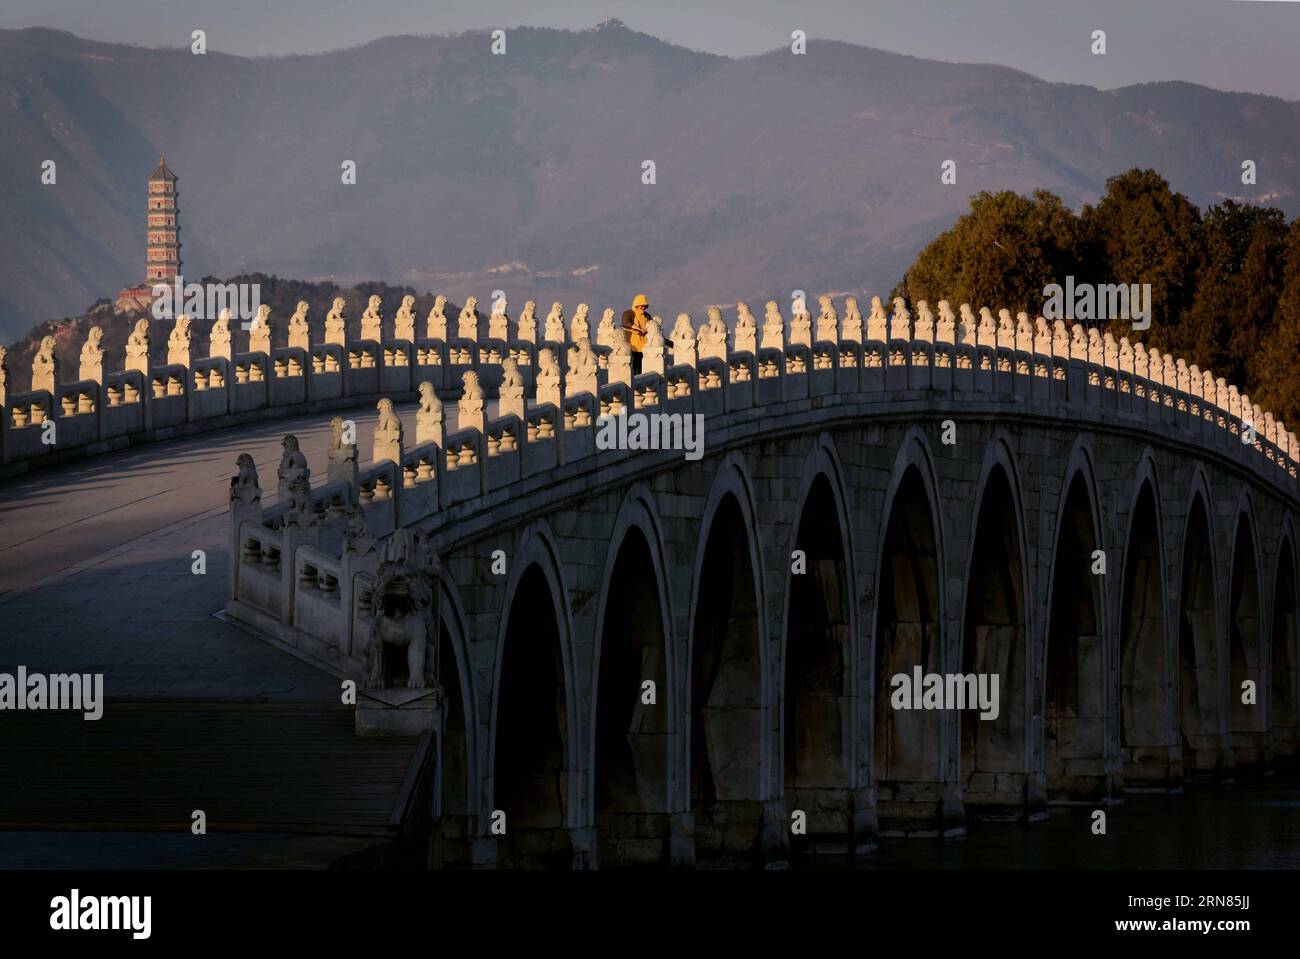 (151008) -- PECHINO, - foto scattata il 2 dicembre 2014 mostra il ponte Seventeen-Arch al Palazzo d'Estate di Pechino, capitale della Cina. Il ponte fu costruito nel 1736-1795 durante la dinastia Qing (1644-1911). (wyo) CHINA-ANCIENT BRIDGE (CN) WangxSong PUBLICATIONxNOTxINxCHN 151008 Pechino foto scattata IL 2 dicembre 2014 mostra il Seventeen Arch Bridge AL Palazzo estivo di Pechino capitale della Cina il Ponte che costruito nel 1736 1795 nella dinastia Qing 1644 1911 wyo China Ancient Bridges CN WangxSong PUBLICATIONxNOTxINxCHN Foto Stock